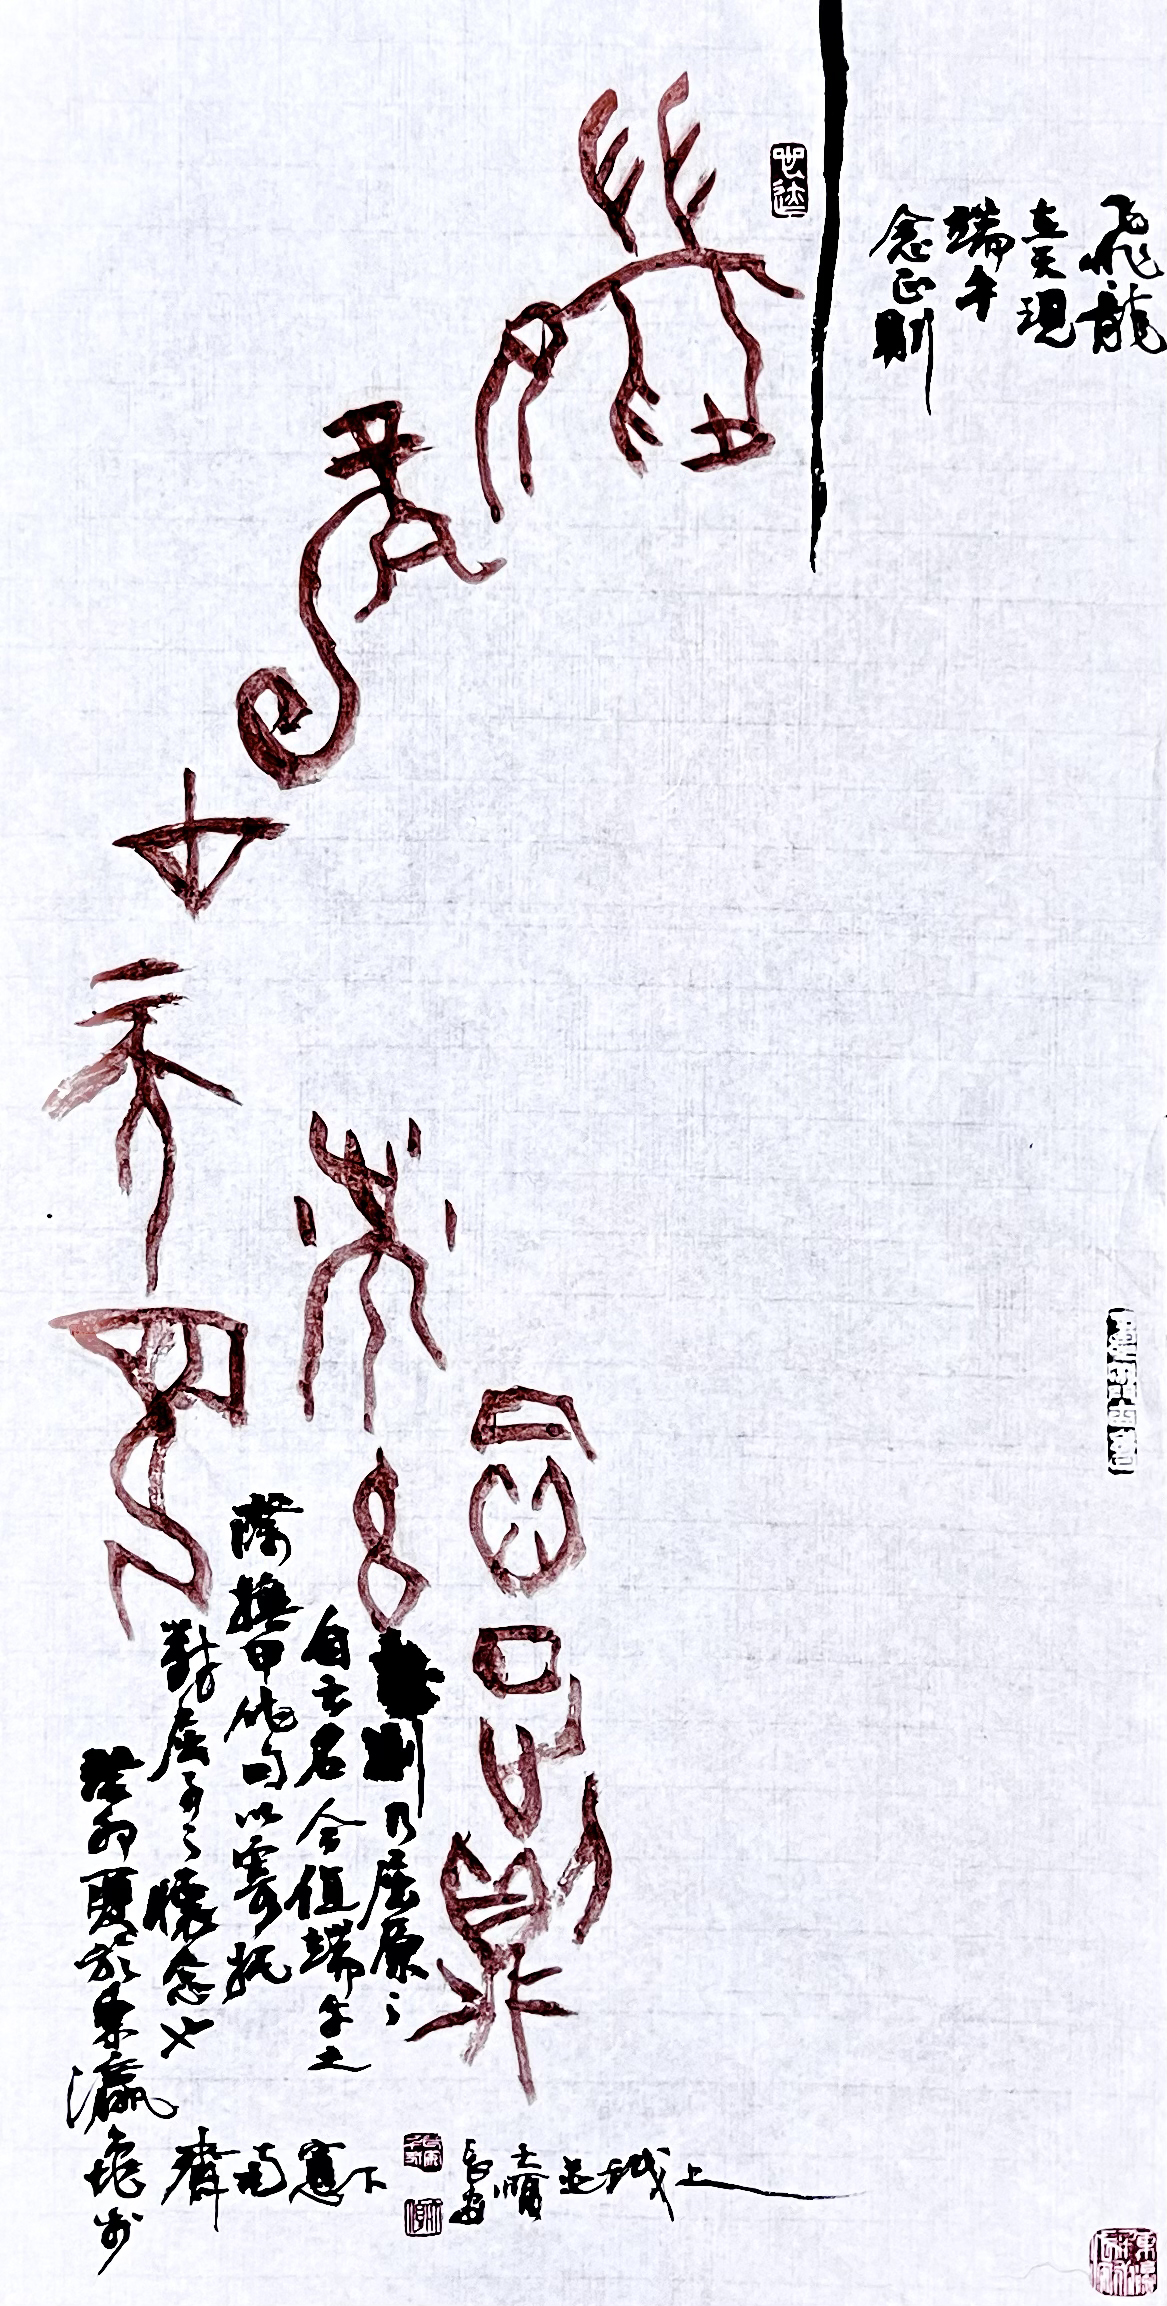 《飞龙在天 浓情端午》海内外华人艺术家共庆佳节书画展(图169)